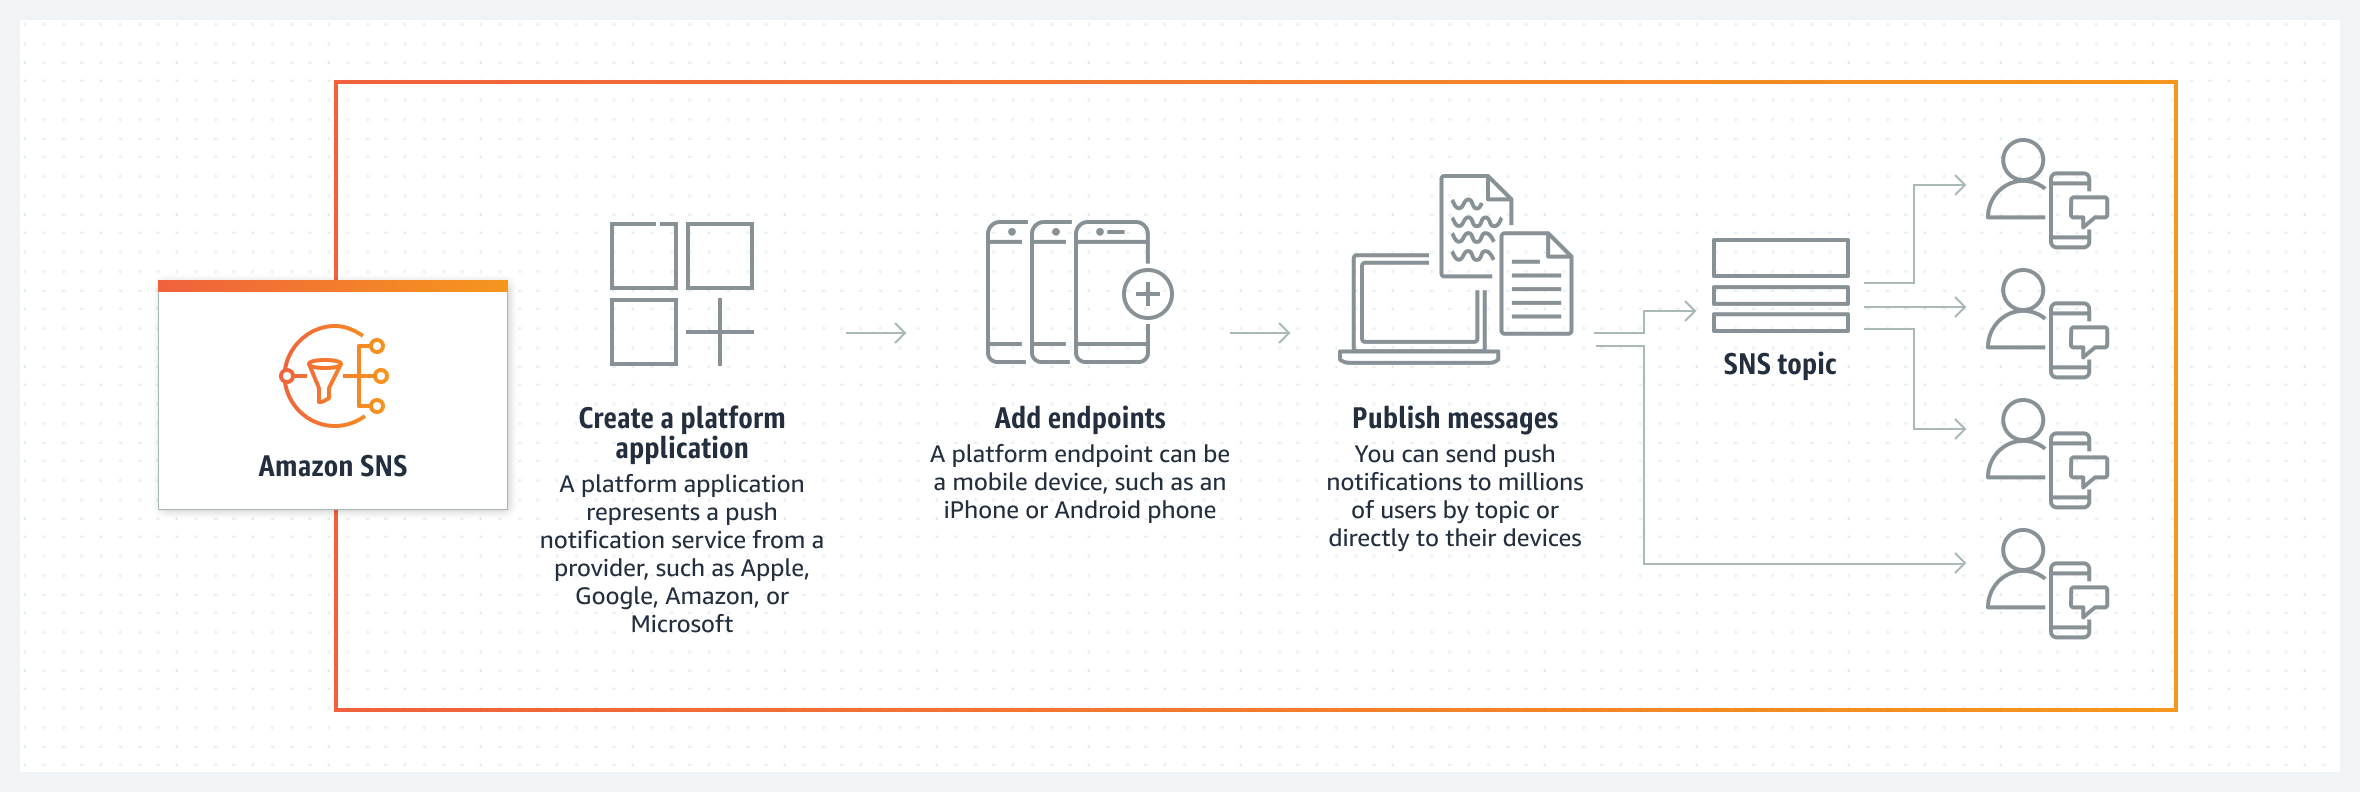 Схема демонстрирует, как Amazon SNS позволяет публиковать мобильные push-уведомления для пользователей напрямую или по темам SNS. 